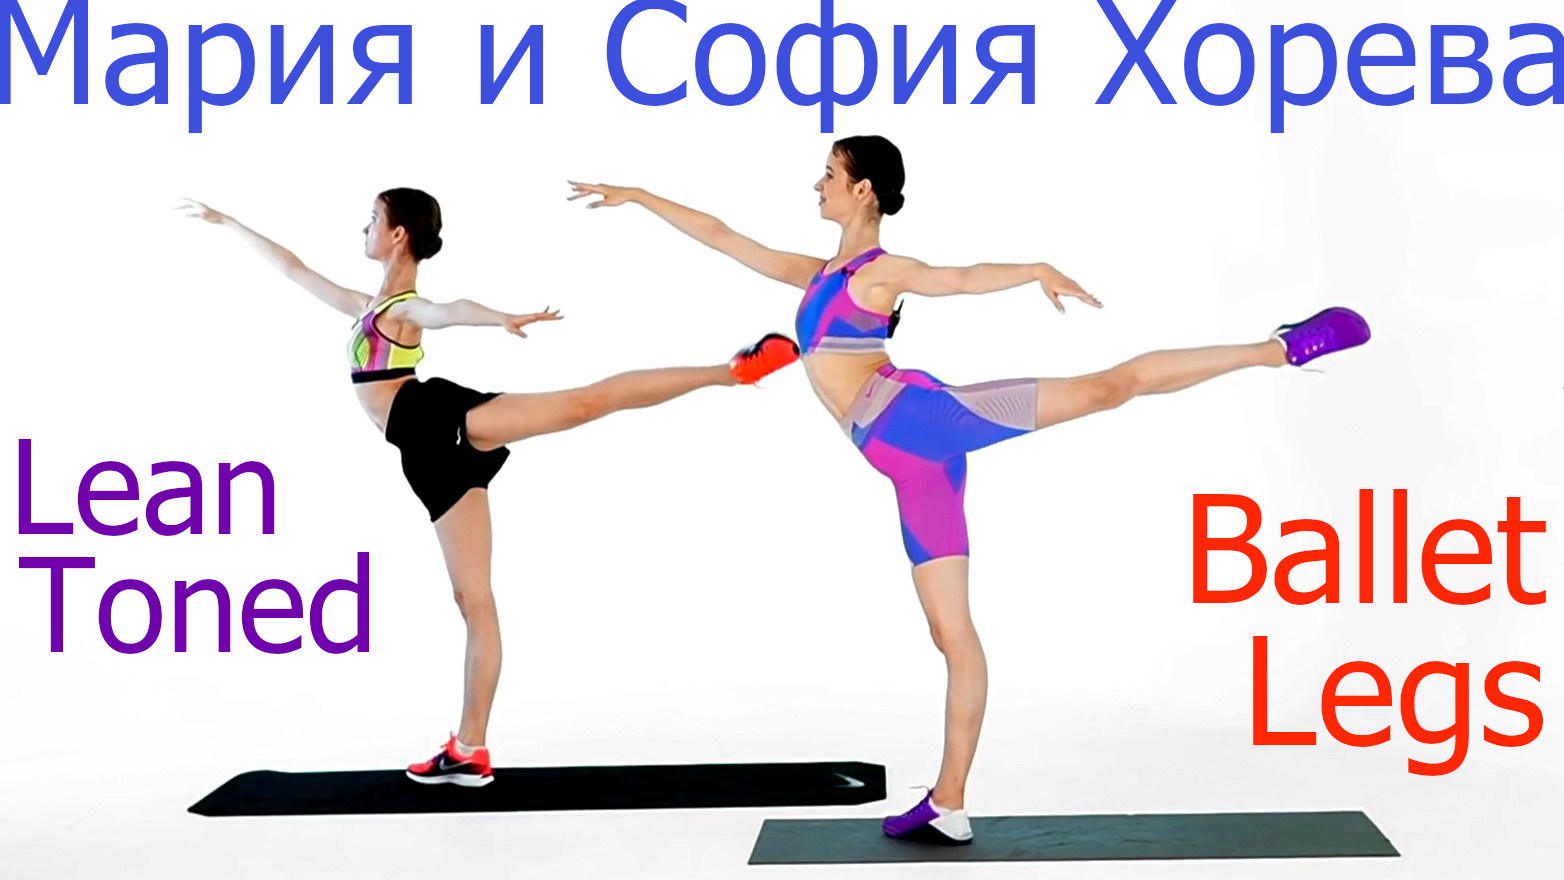 Maria Khoreva and Sofya Khoreva - Toned Lean Dance Ballet Legs Workout